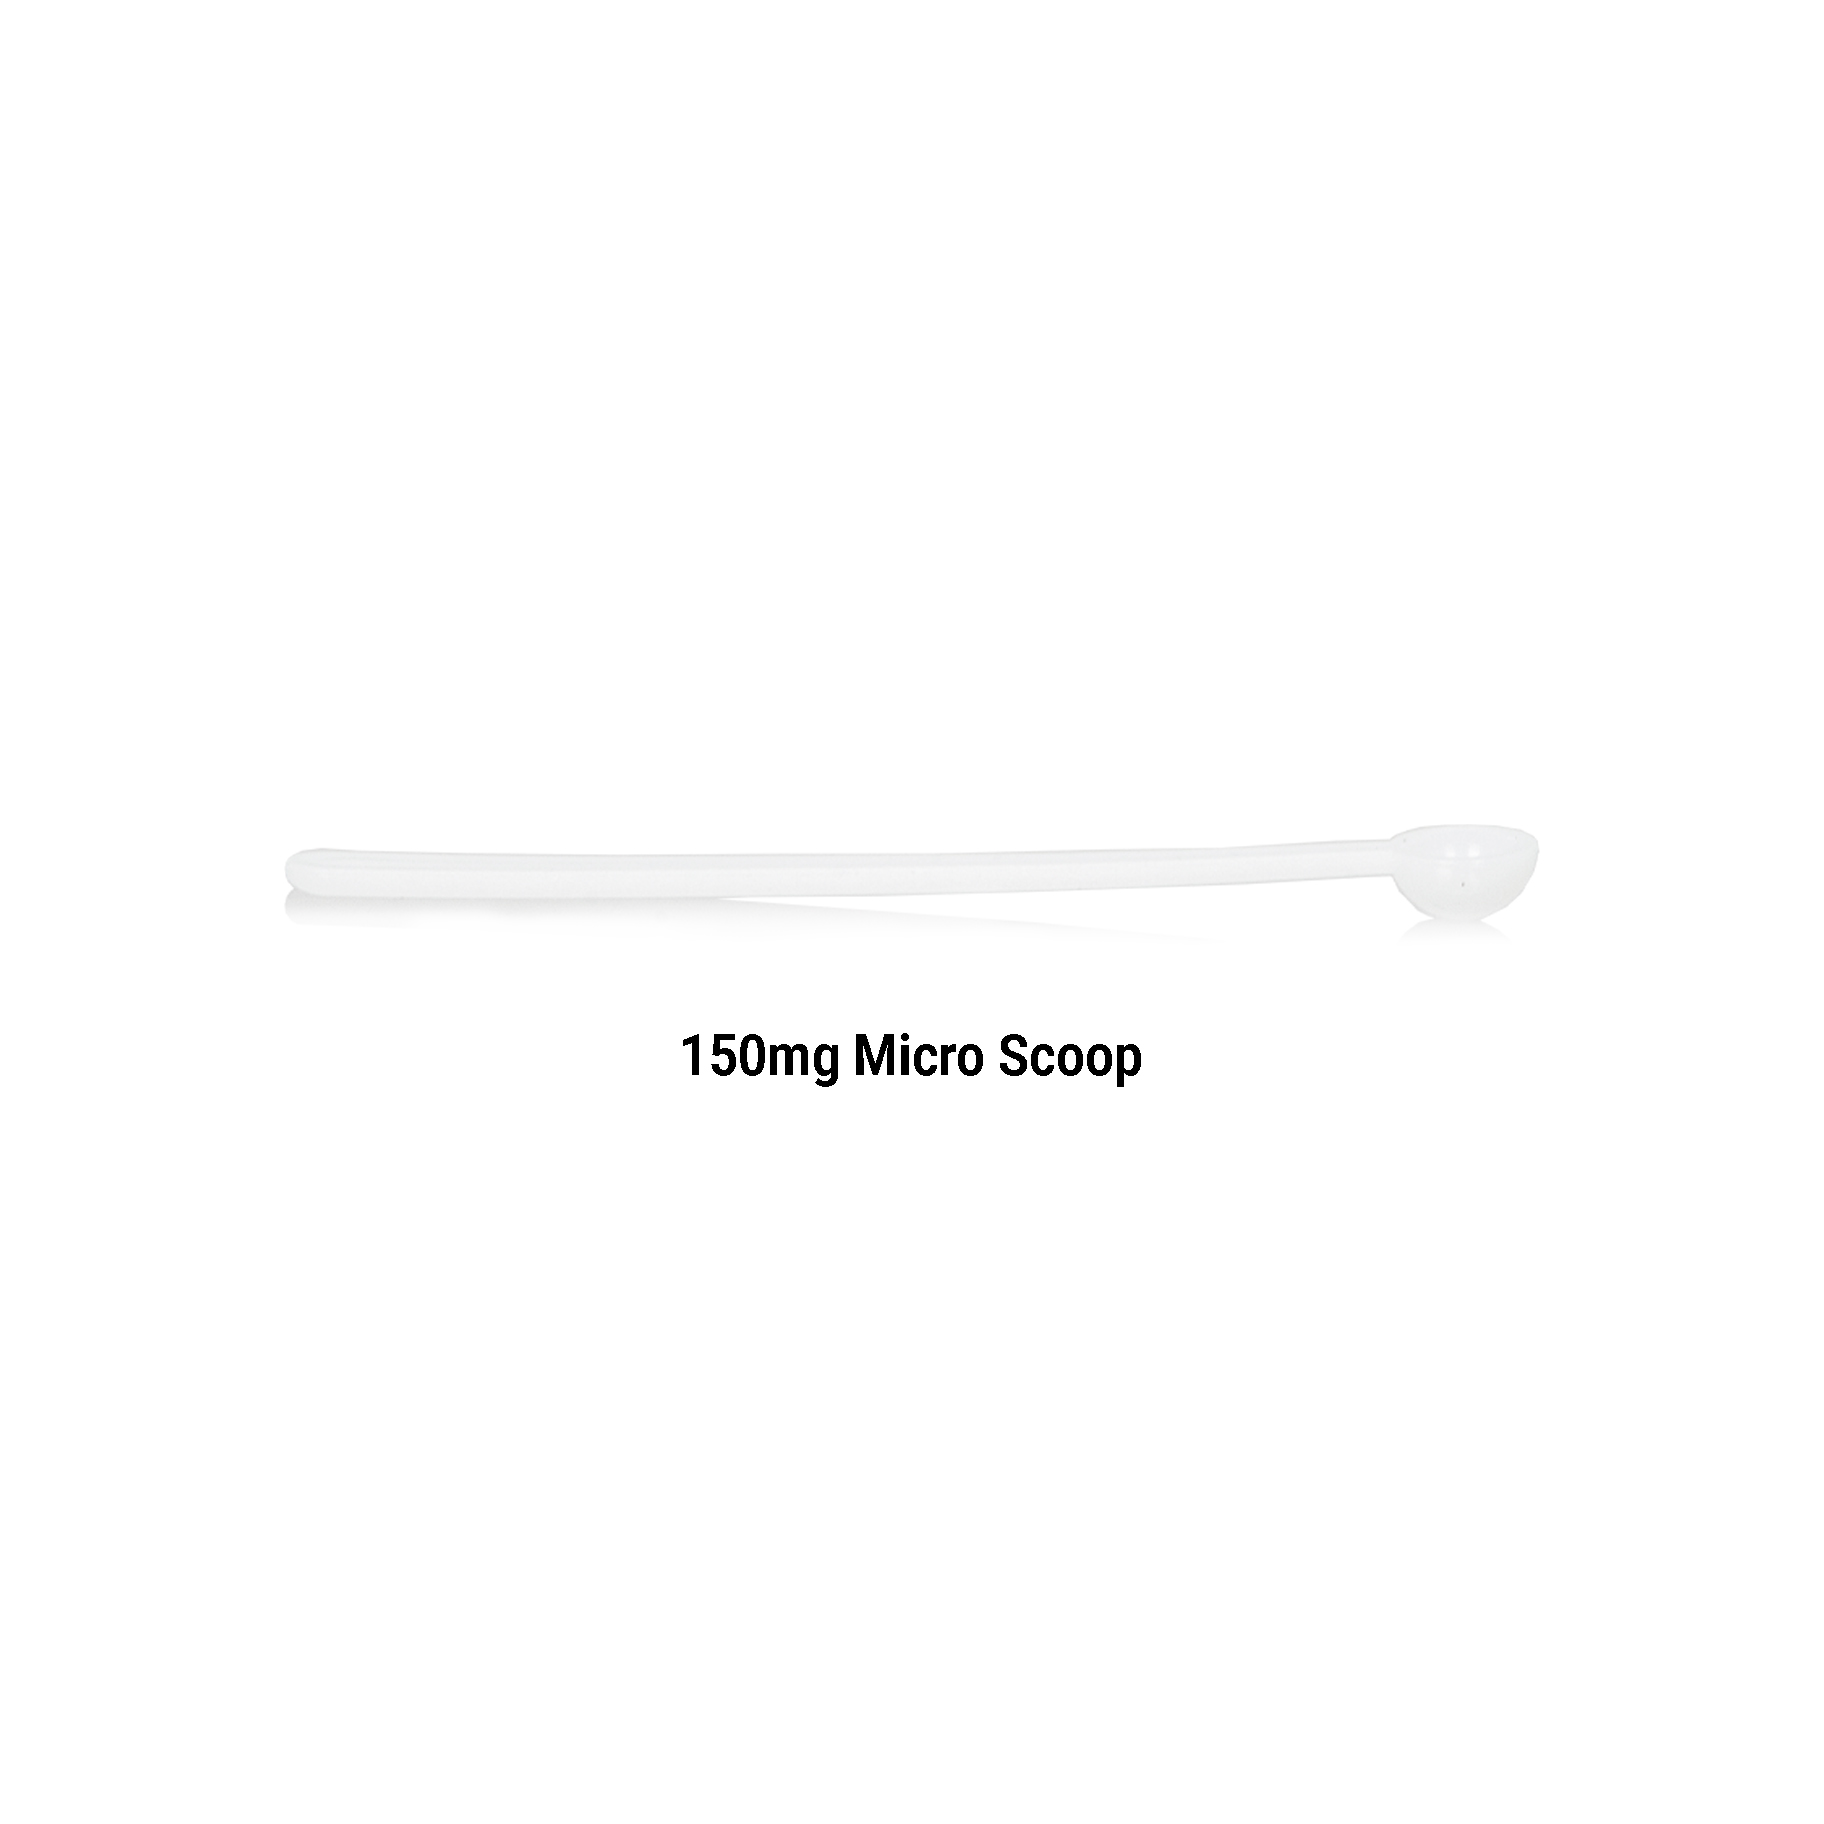 150mg micro scoop 5 pack